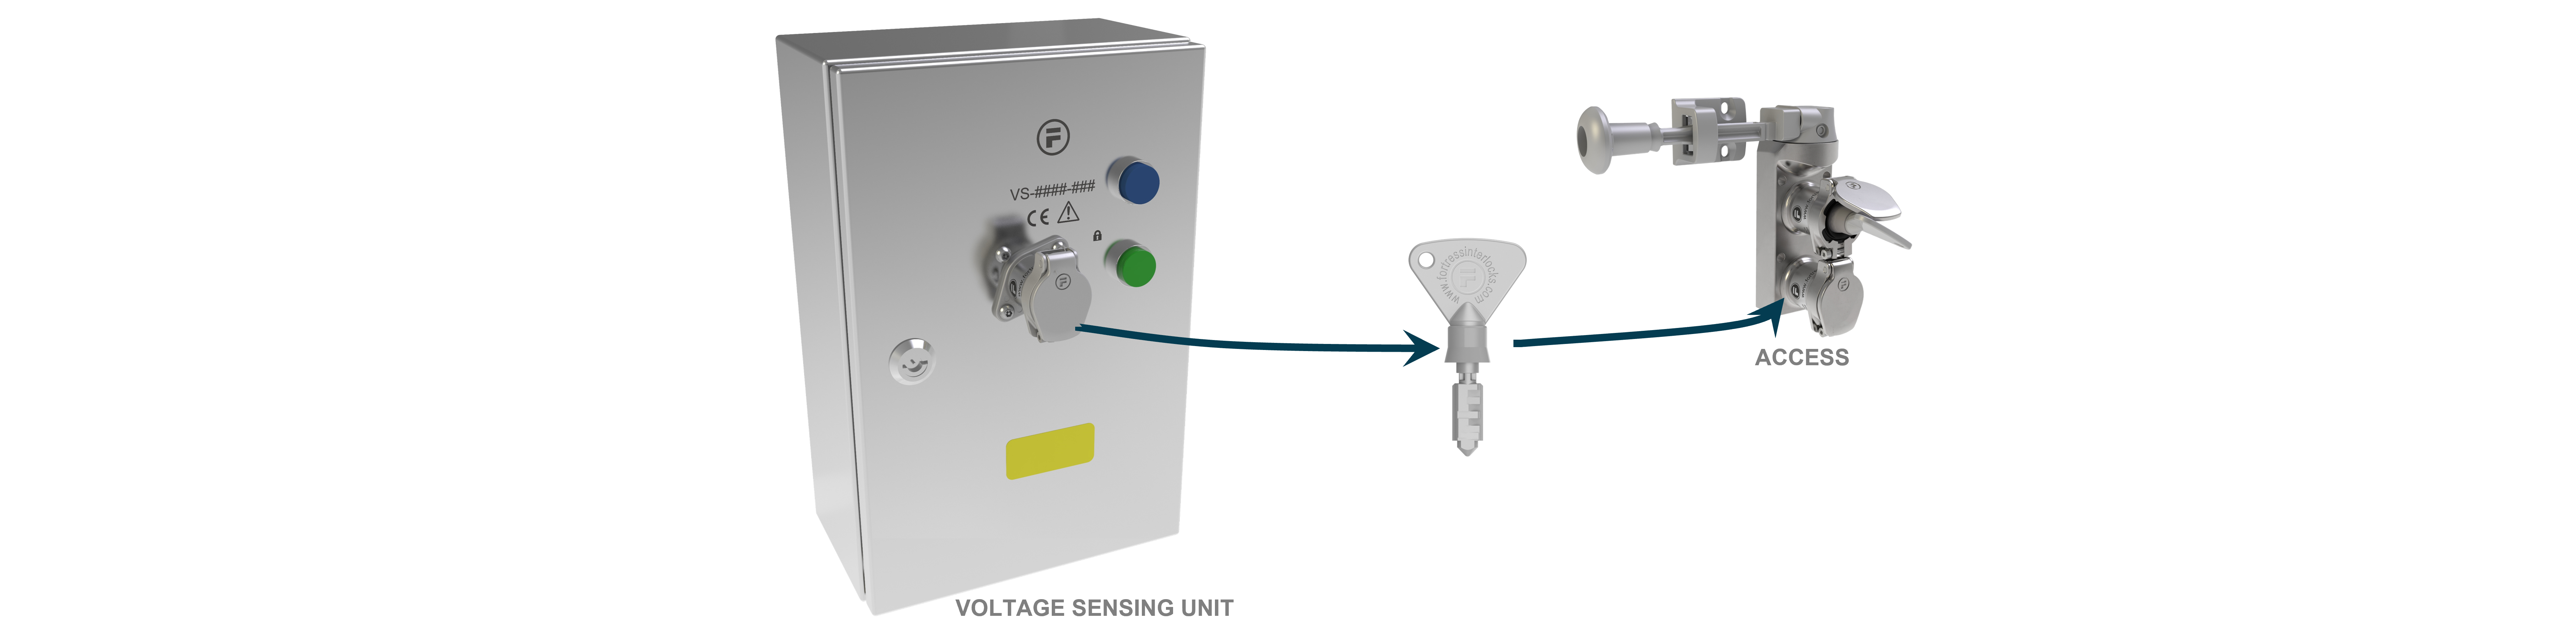 Voltage Sensing mGard interlook là loại có cảm biến về dòng điện sinh ra do động cơ thiết bị chưa dừng hẳn